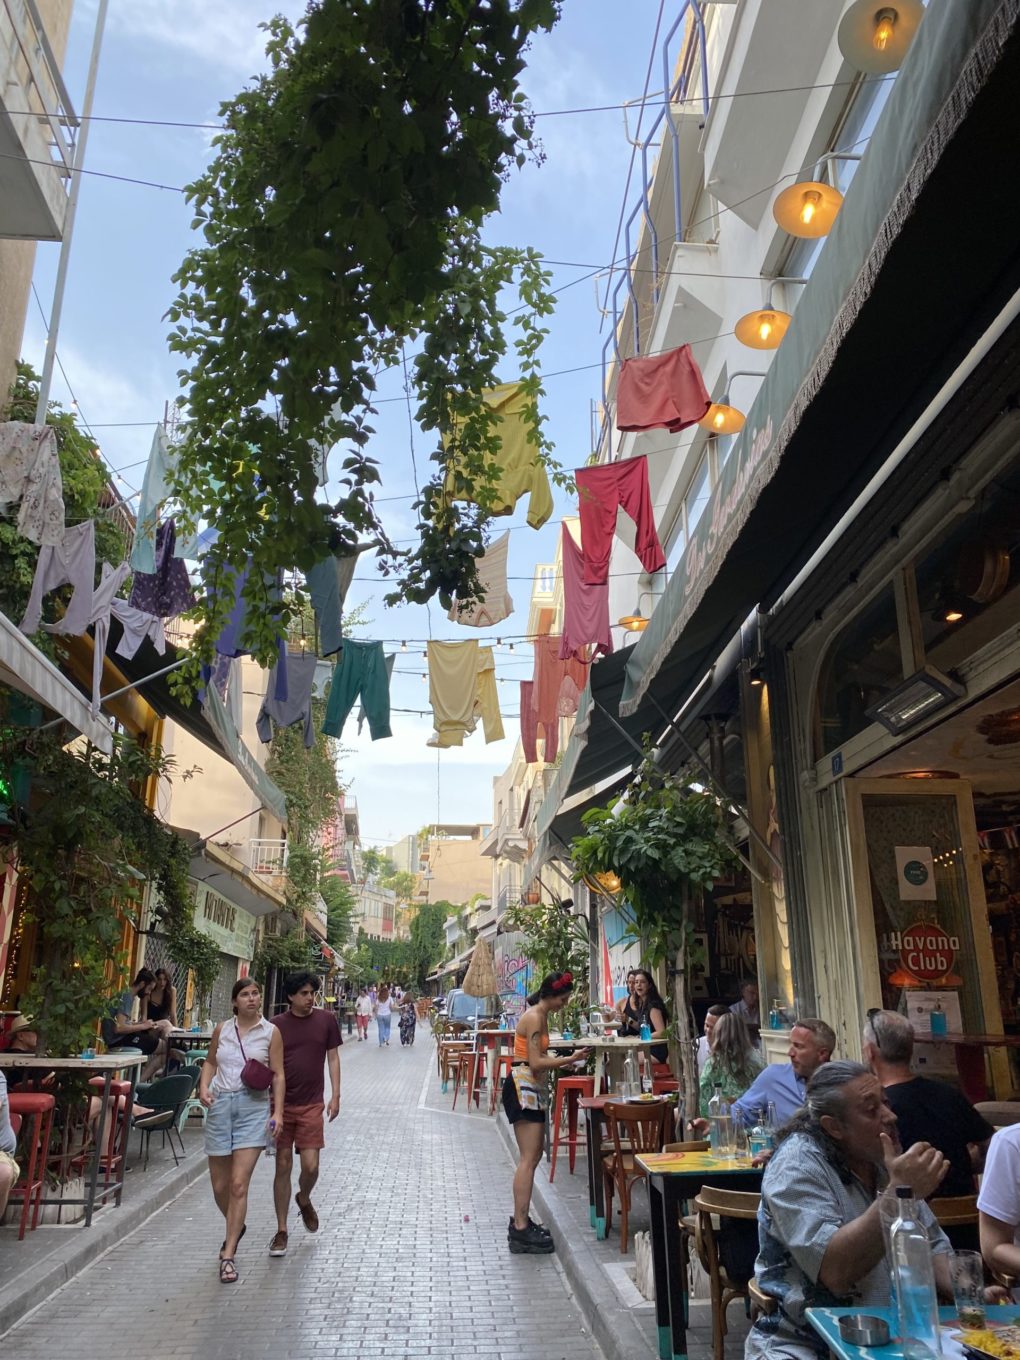 Schöne Stadtviertel in Athen Reiseblog Tipps